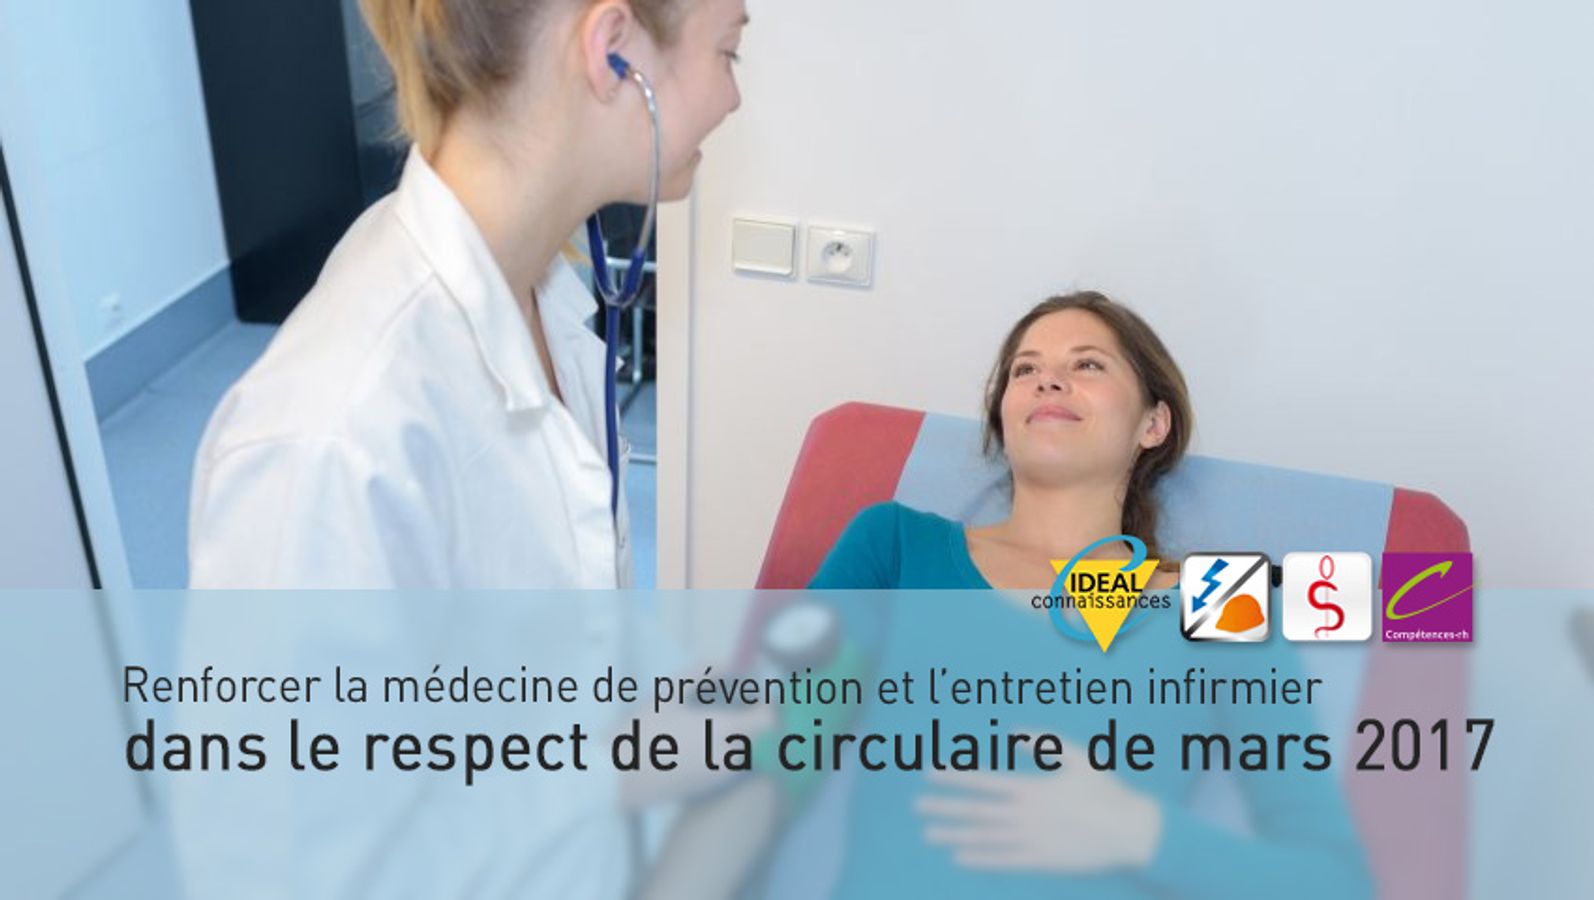 Renforcer la médecine de prévention et l’entretien infirmier dans le respect de la circulaire de mars 2017